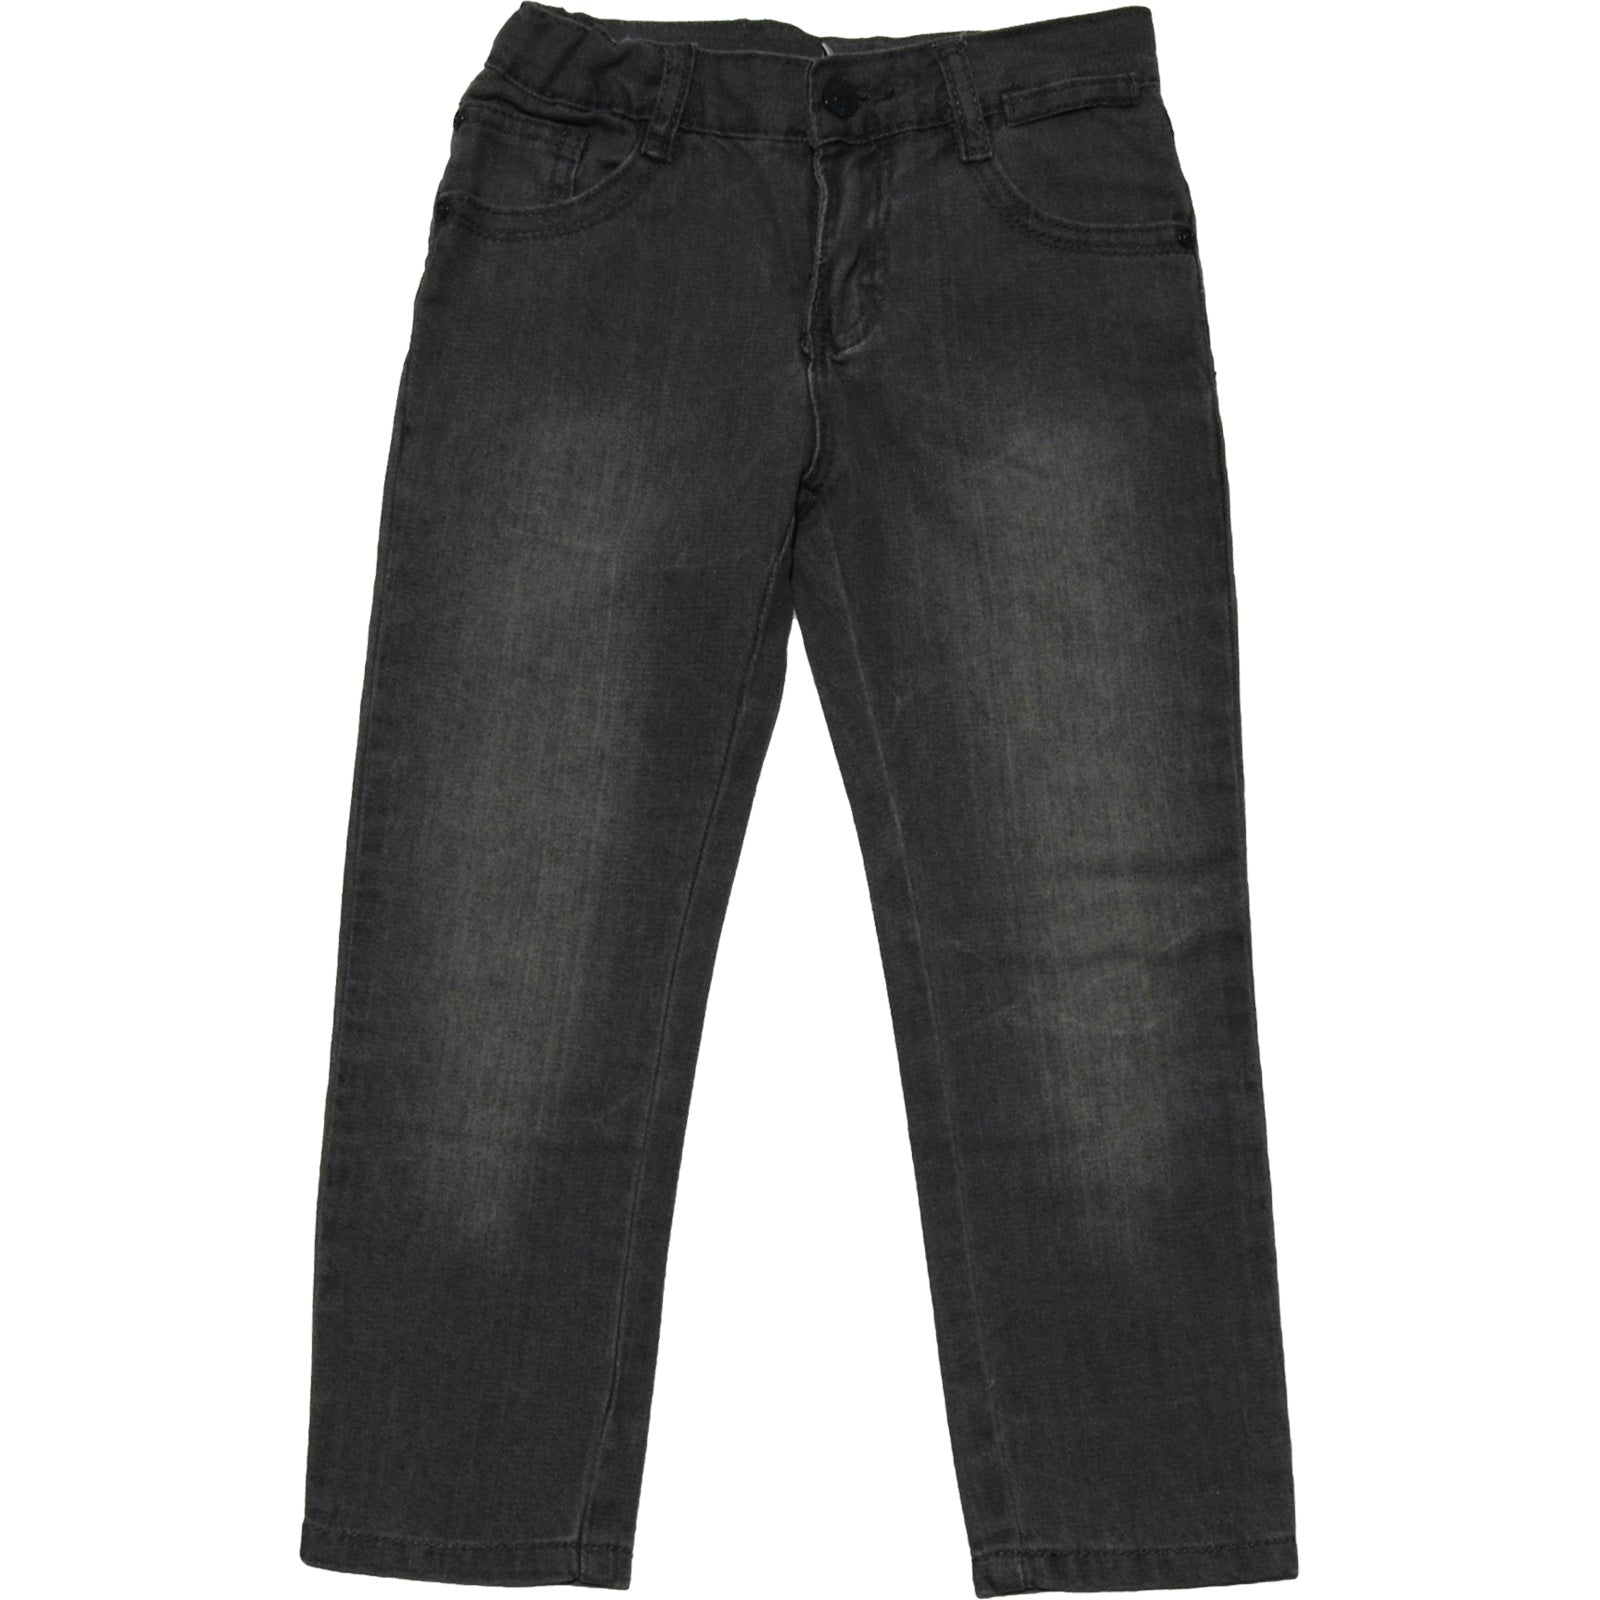 
  Jeanshose aus der Kinderbekleidungslinie Tuc Tuc, graue Farbe, 5 Taschen mit Taillenregulierun...